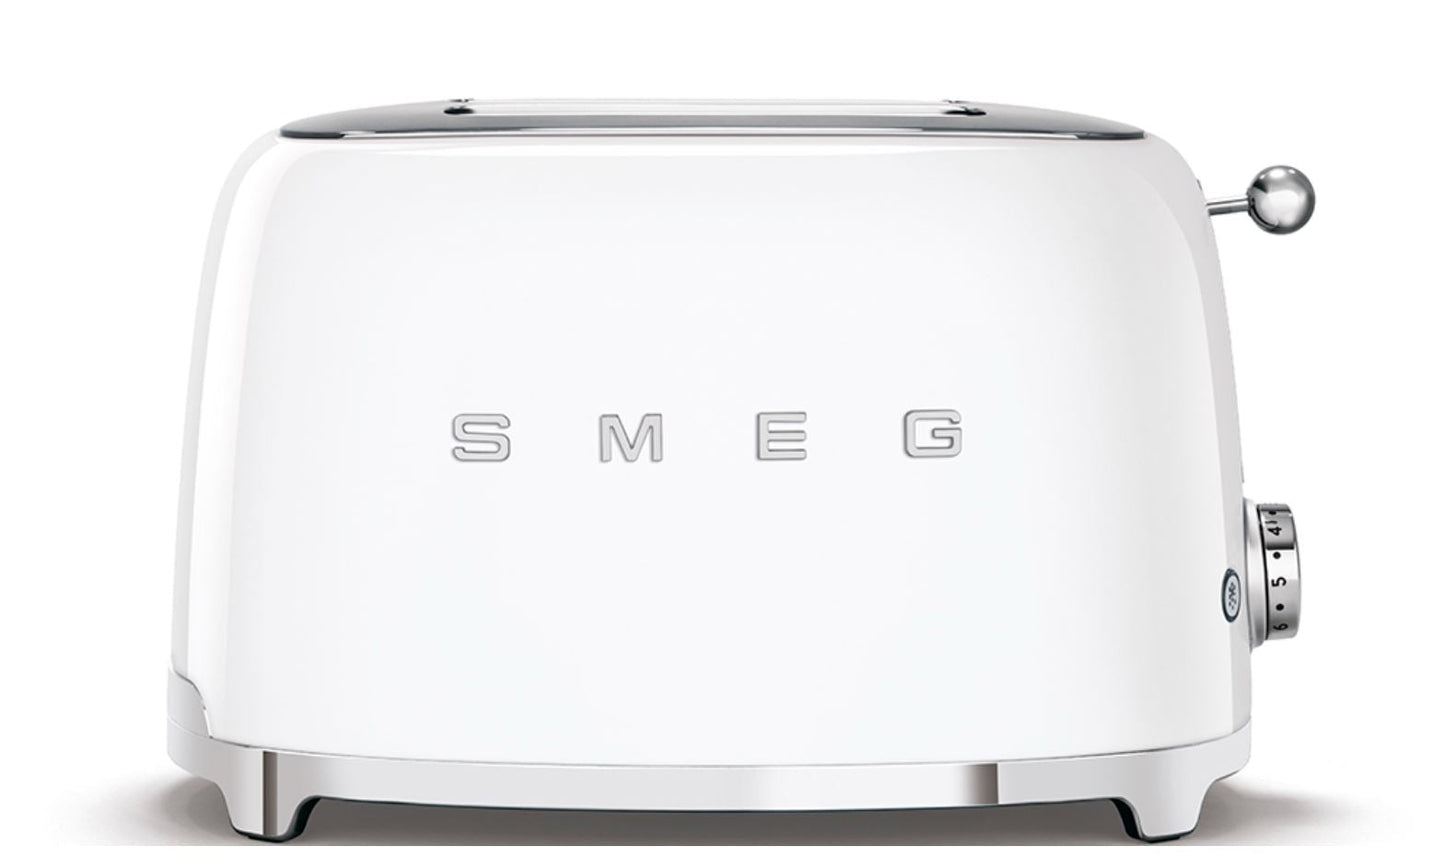 SMEG Retro-Style 4 Slice Toaster